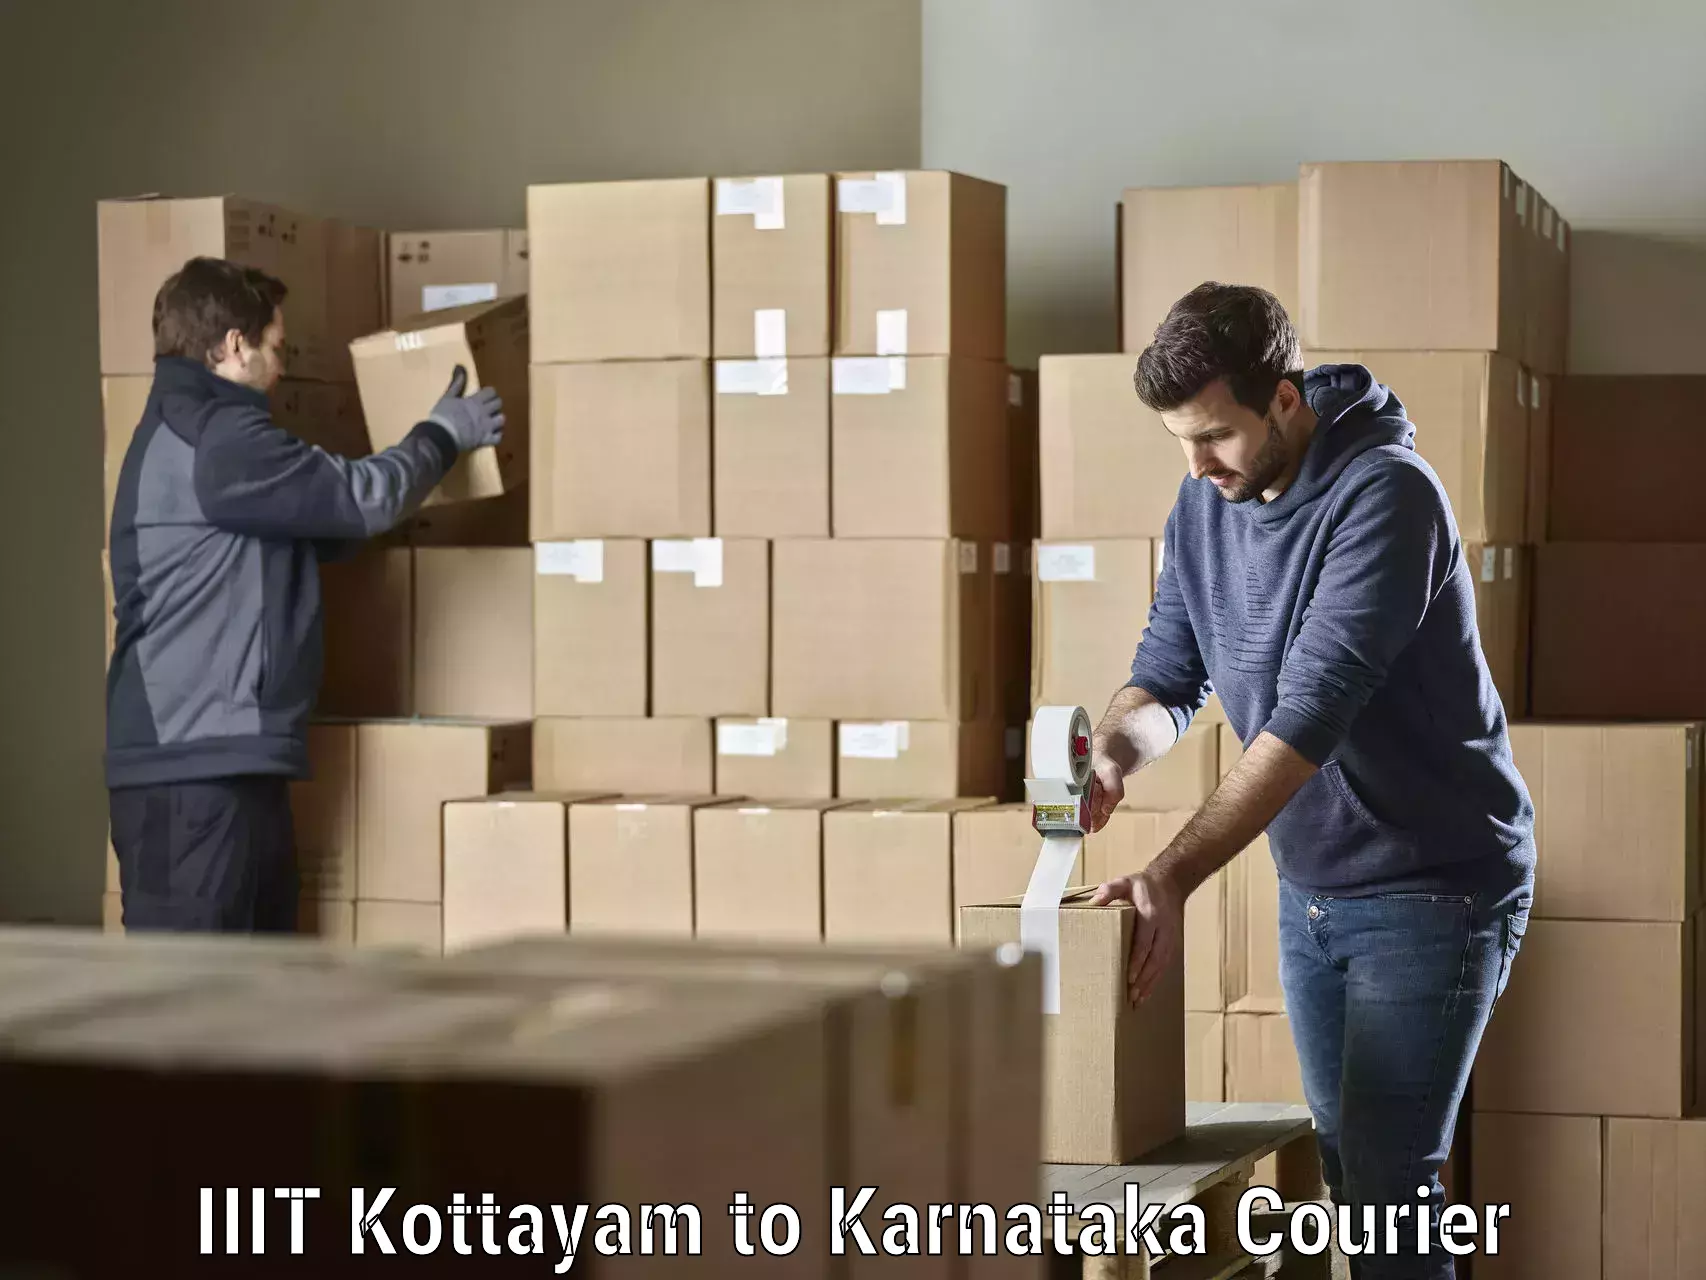 Efficient cargo handling in IIIT Kottayam to Karnataka